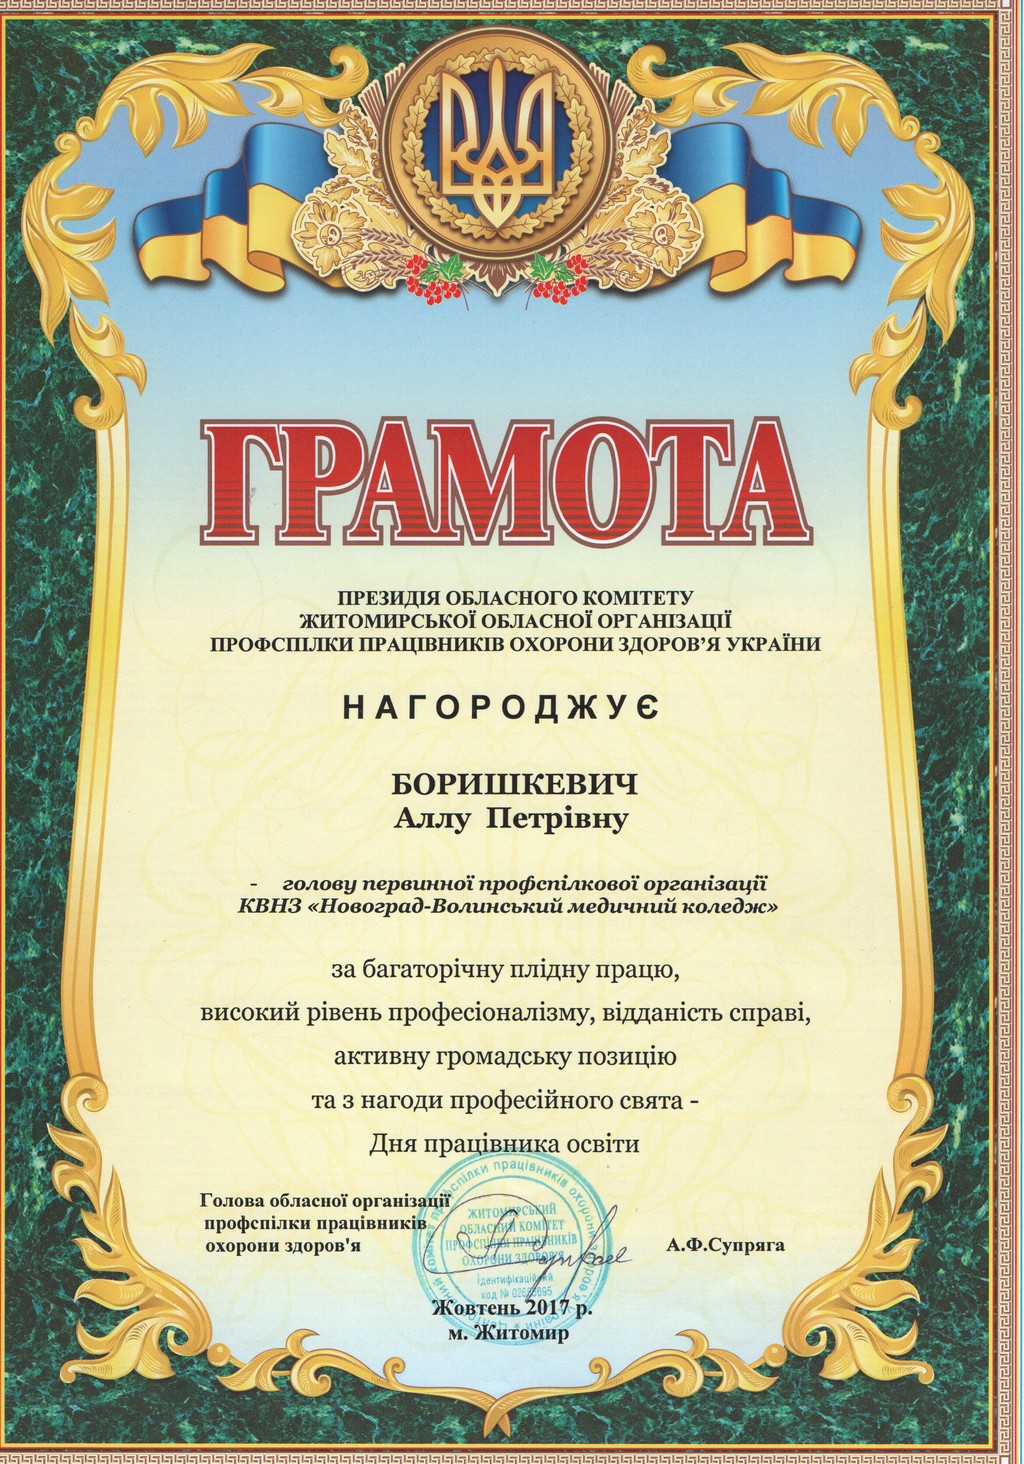 Грамота президії обласного комітету Житомирської обласної організації  профспілки працівників охорони здоров'я